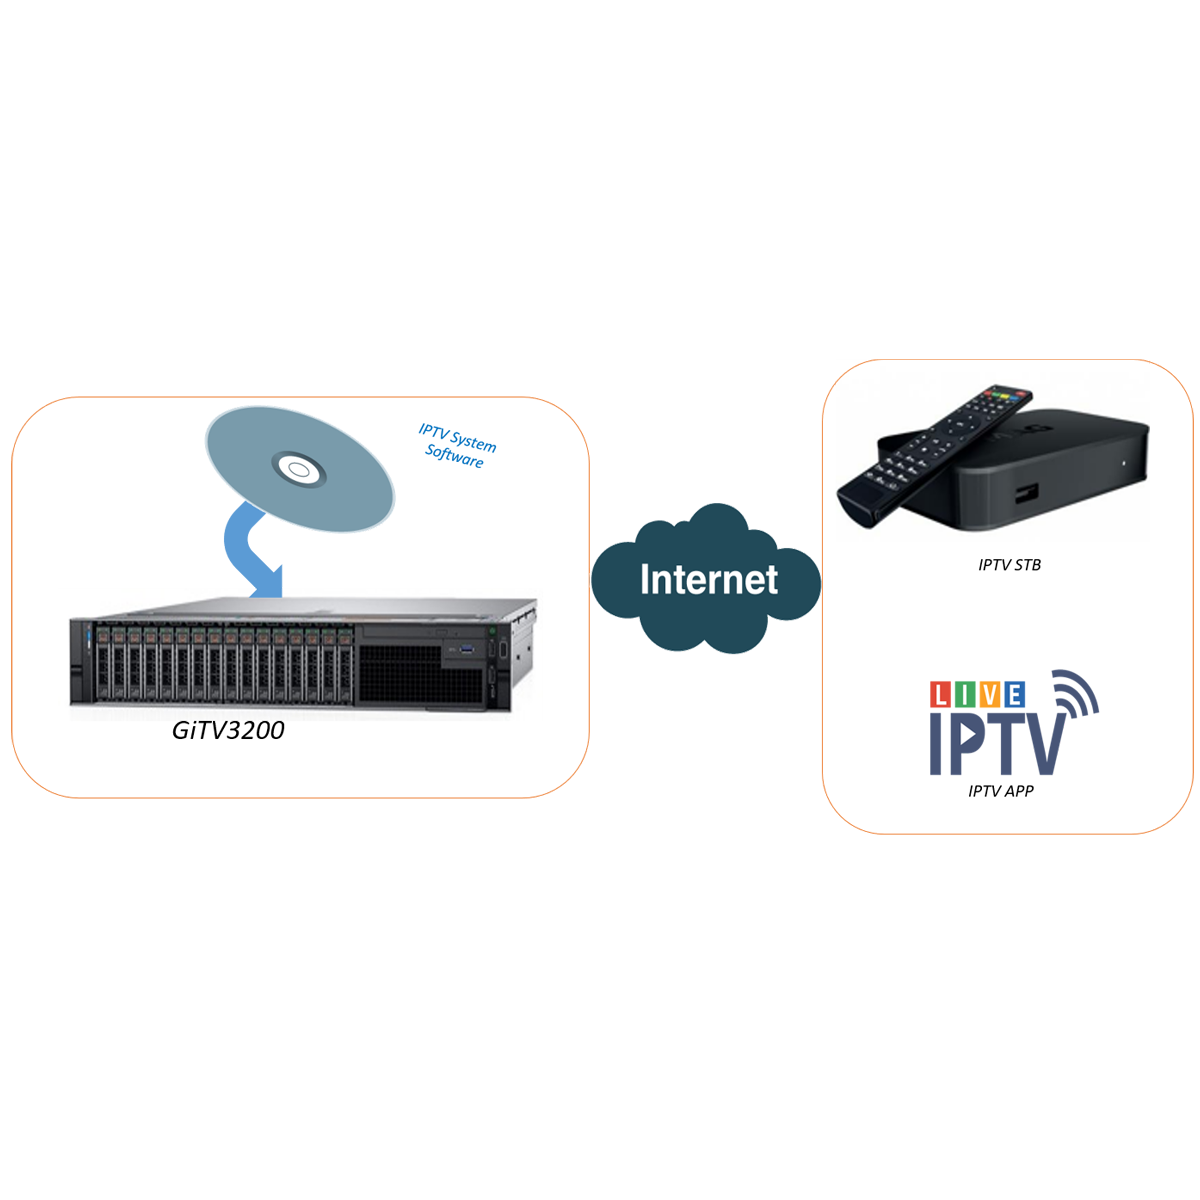 Genew IPTV System GiTV3200 